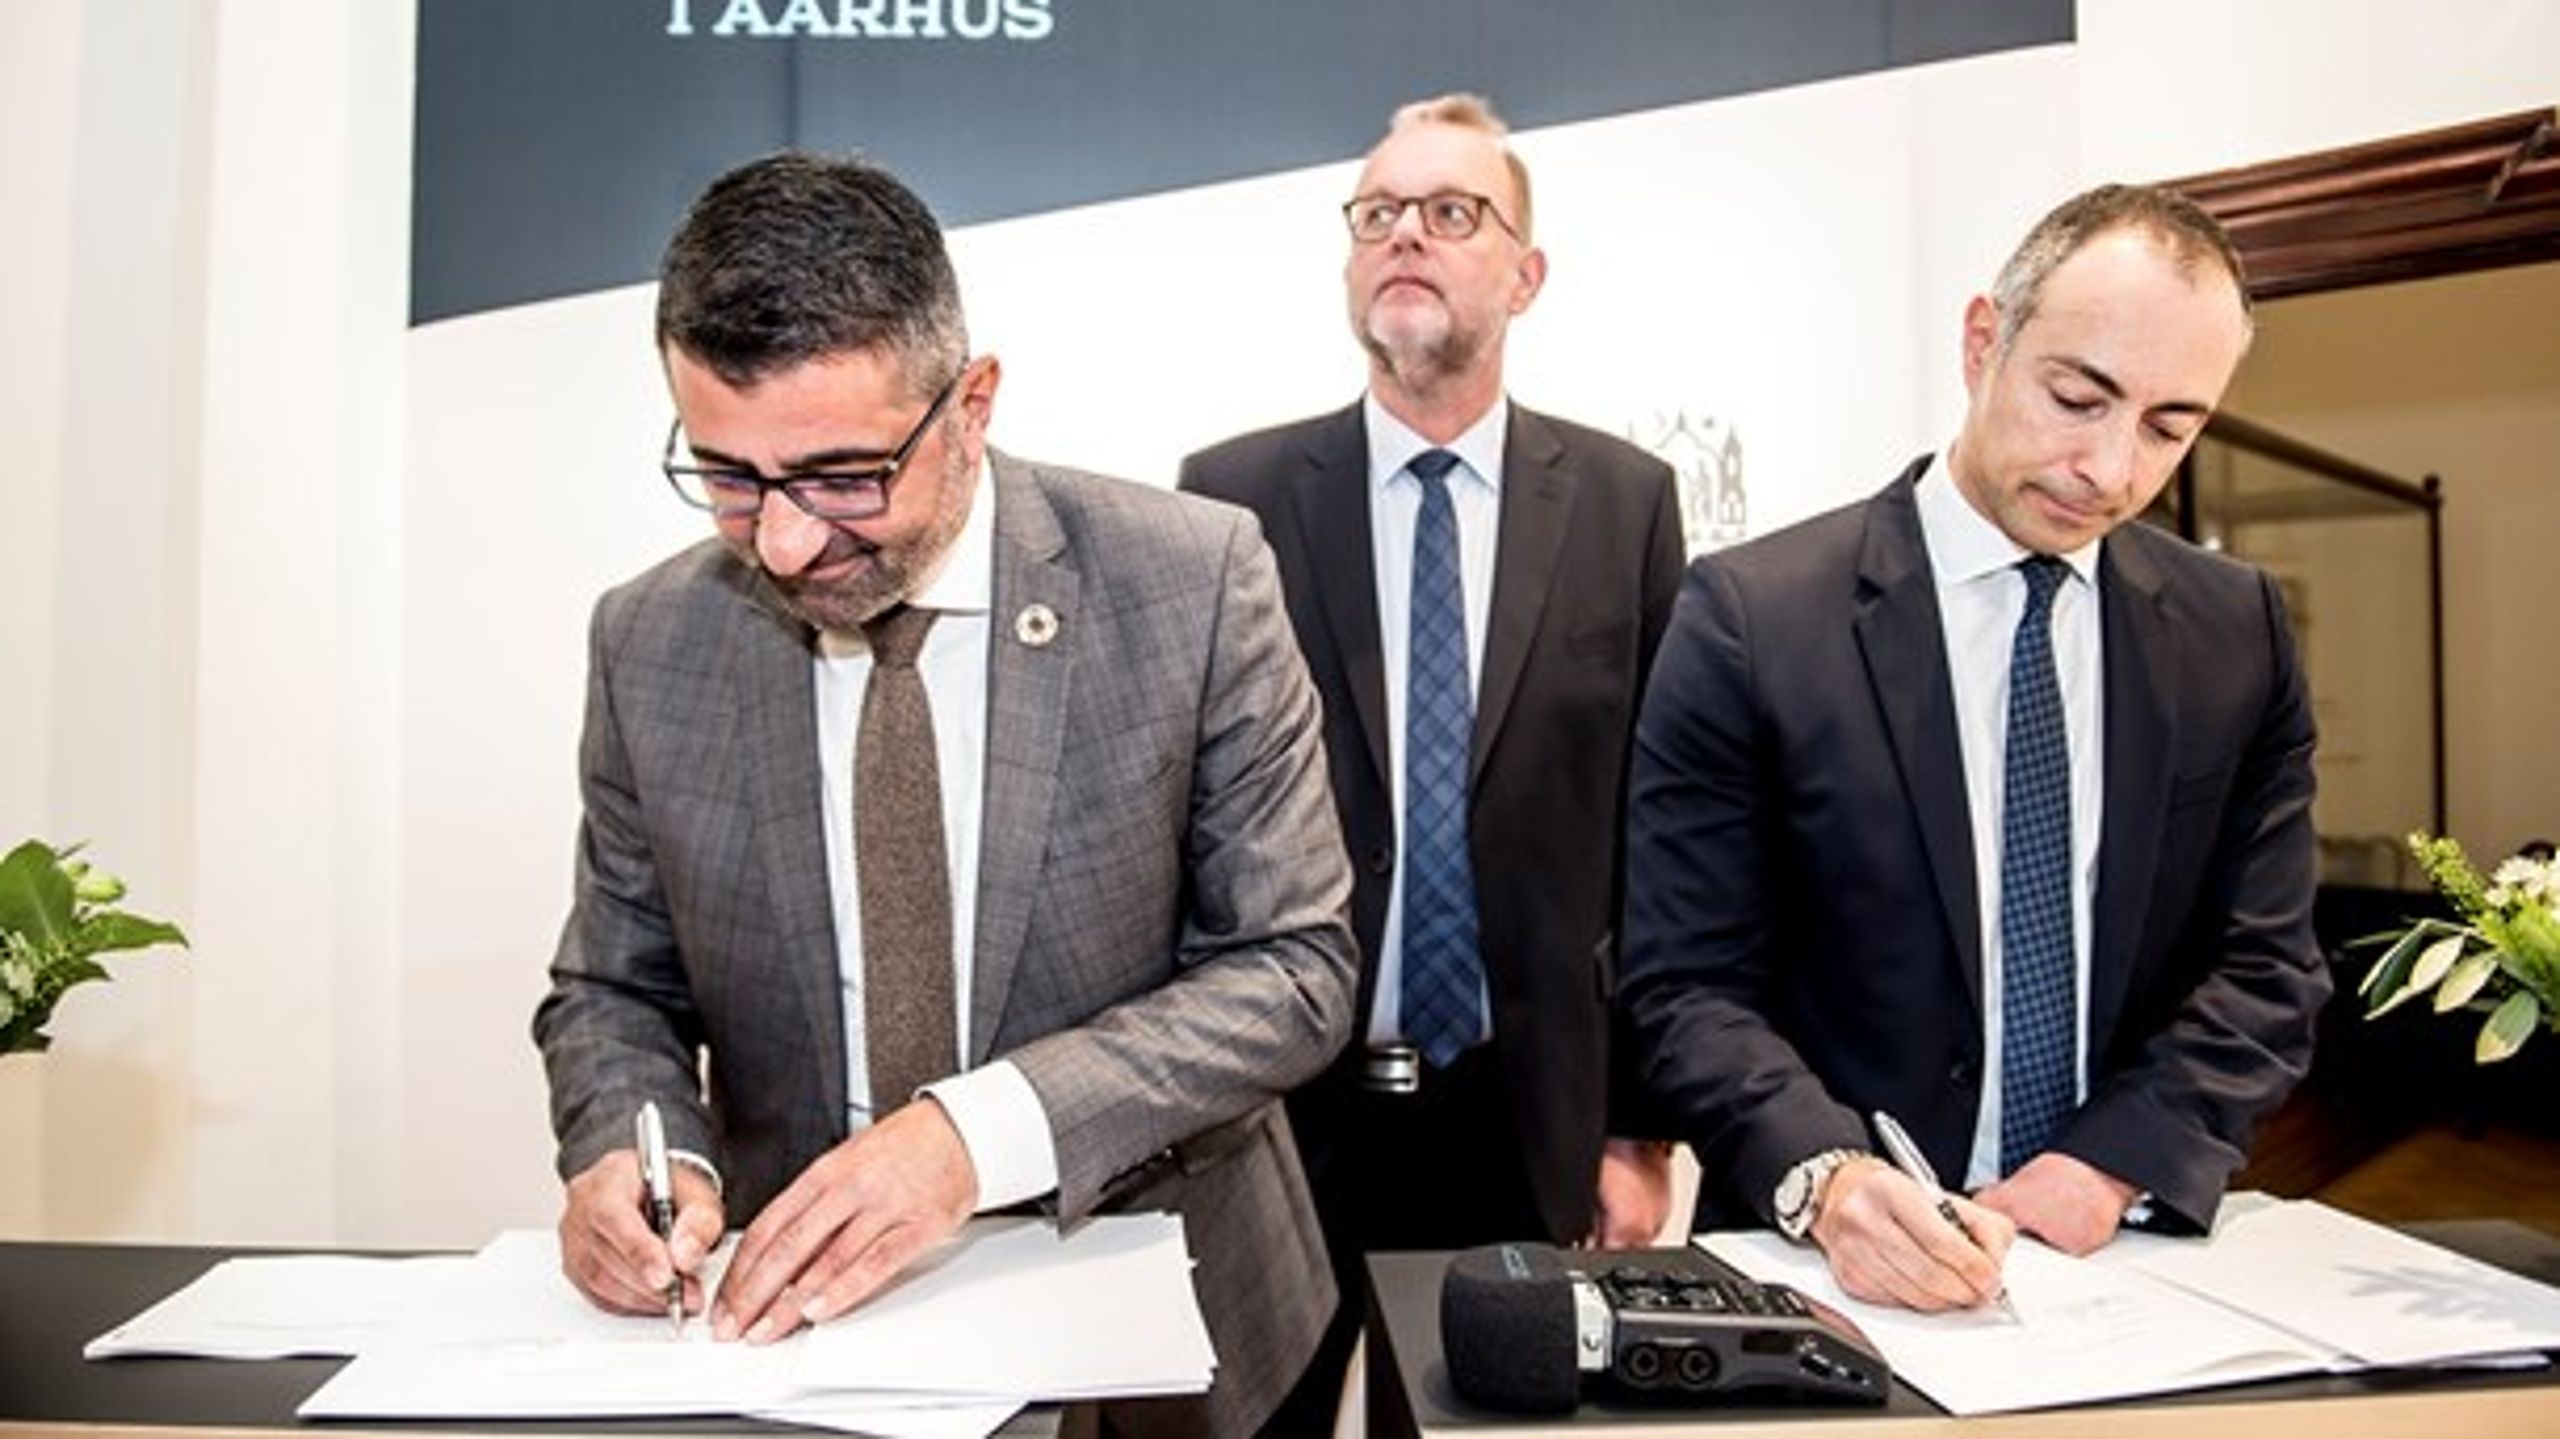 Aarhus Kommune og A.P. Møller Holding indgik i 2018 en aftale om at gøre geotermi til en del af kommunens varmeforsyning. Samir Abboud fra A.P. Møller Holding står til højre.